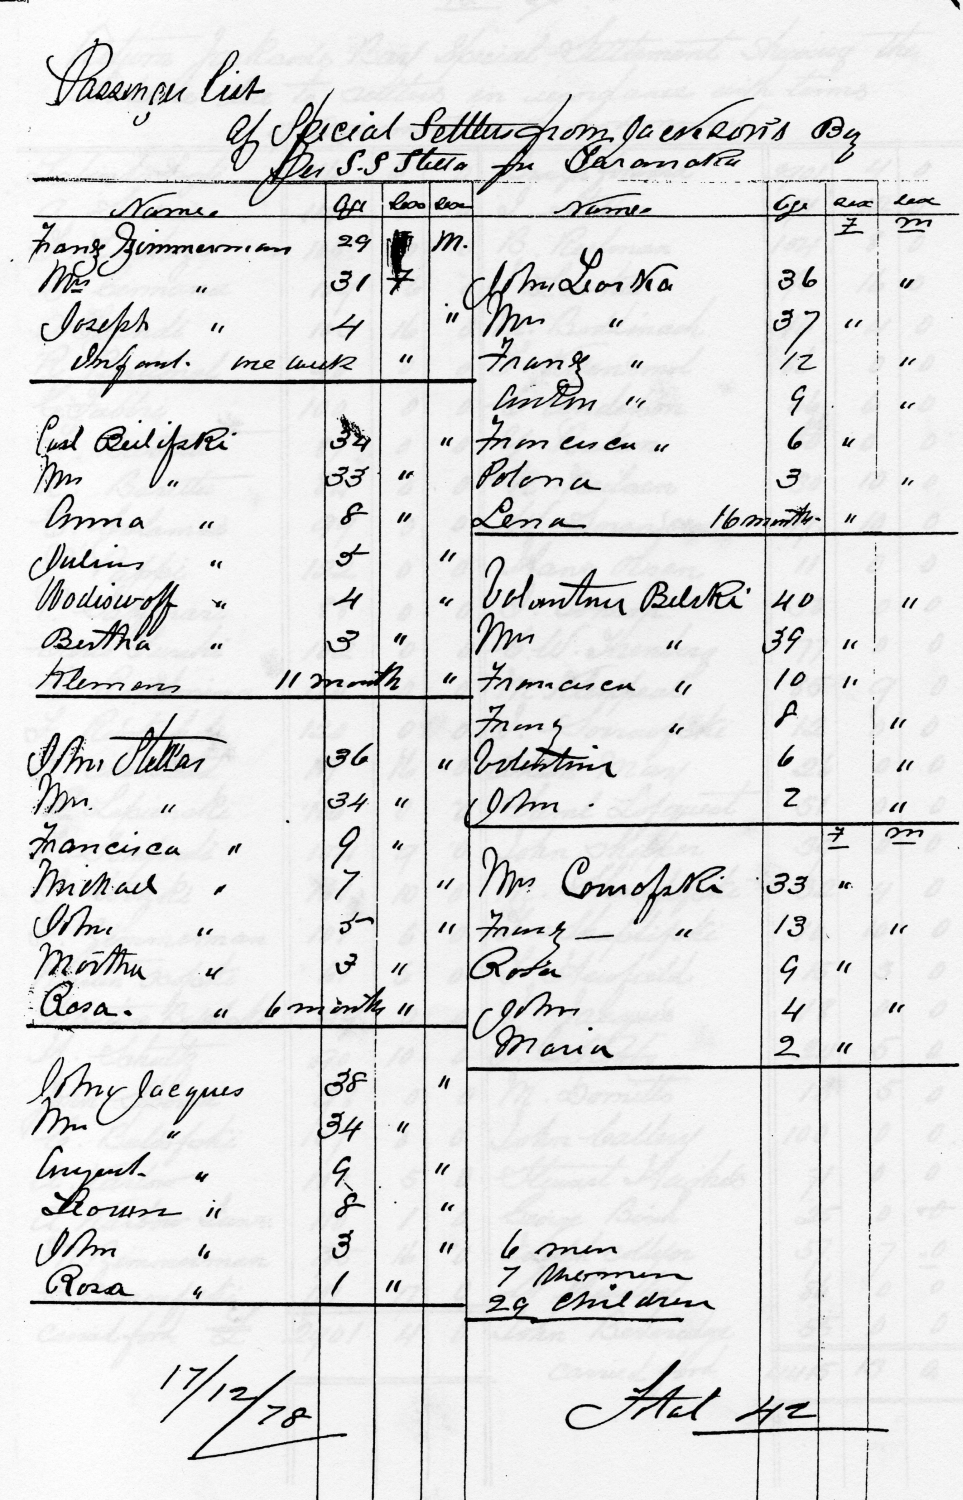 The Stella
passenger list, detailing family members